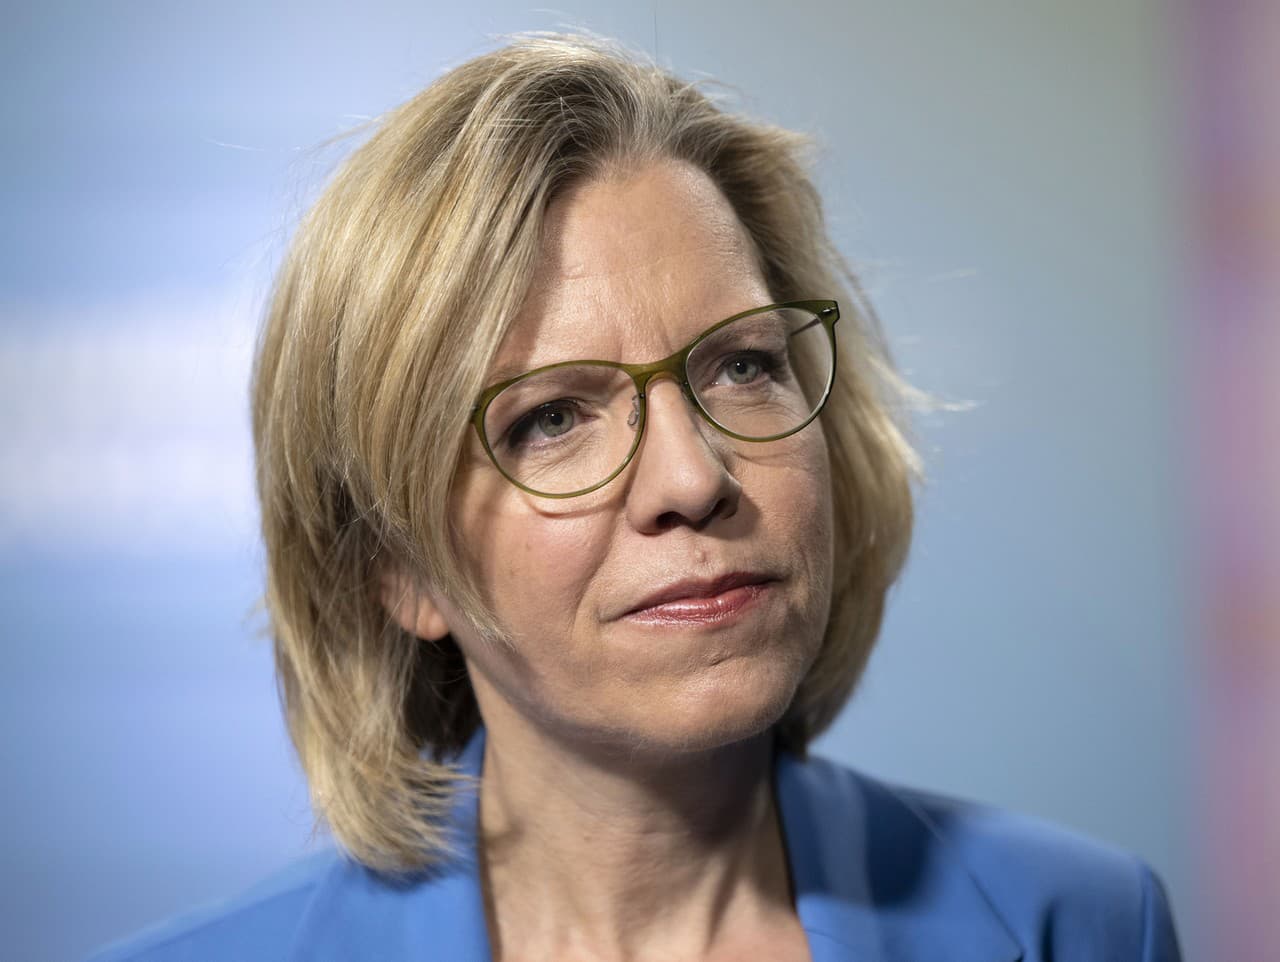 Rakúska ministerka dopravy Leonore Gewesslerová